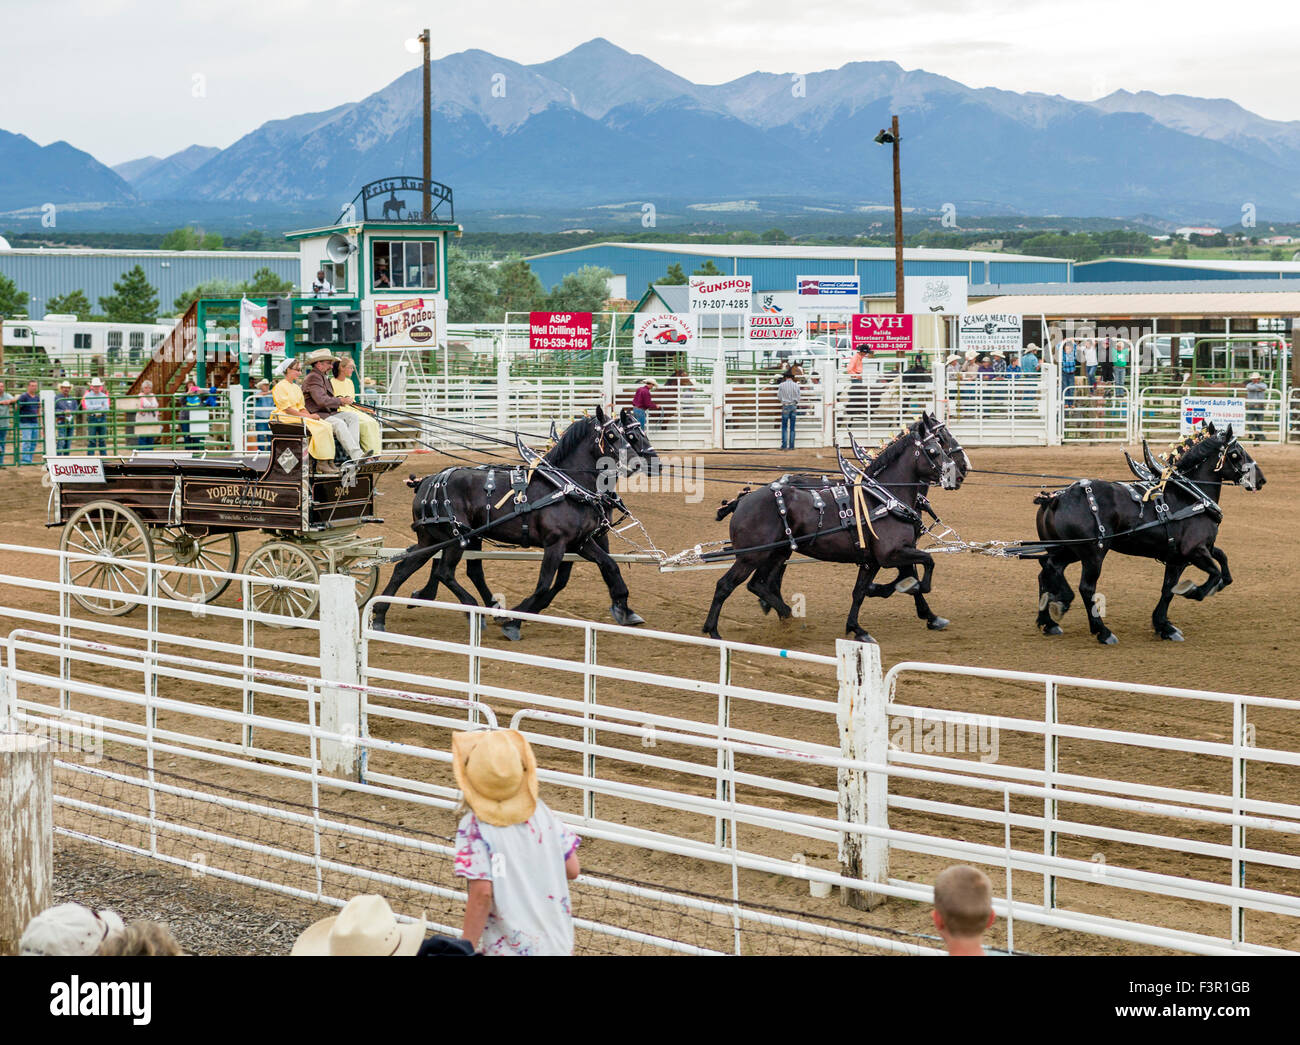 Yoder Familie, Amish, Parade in ihren Wagen, gezogen von sechs Percheron Pferde, Chaffee County Fair & Rodeo, Salida, Colorado, USA Stockfoto